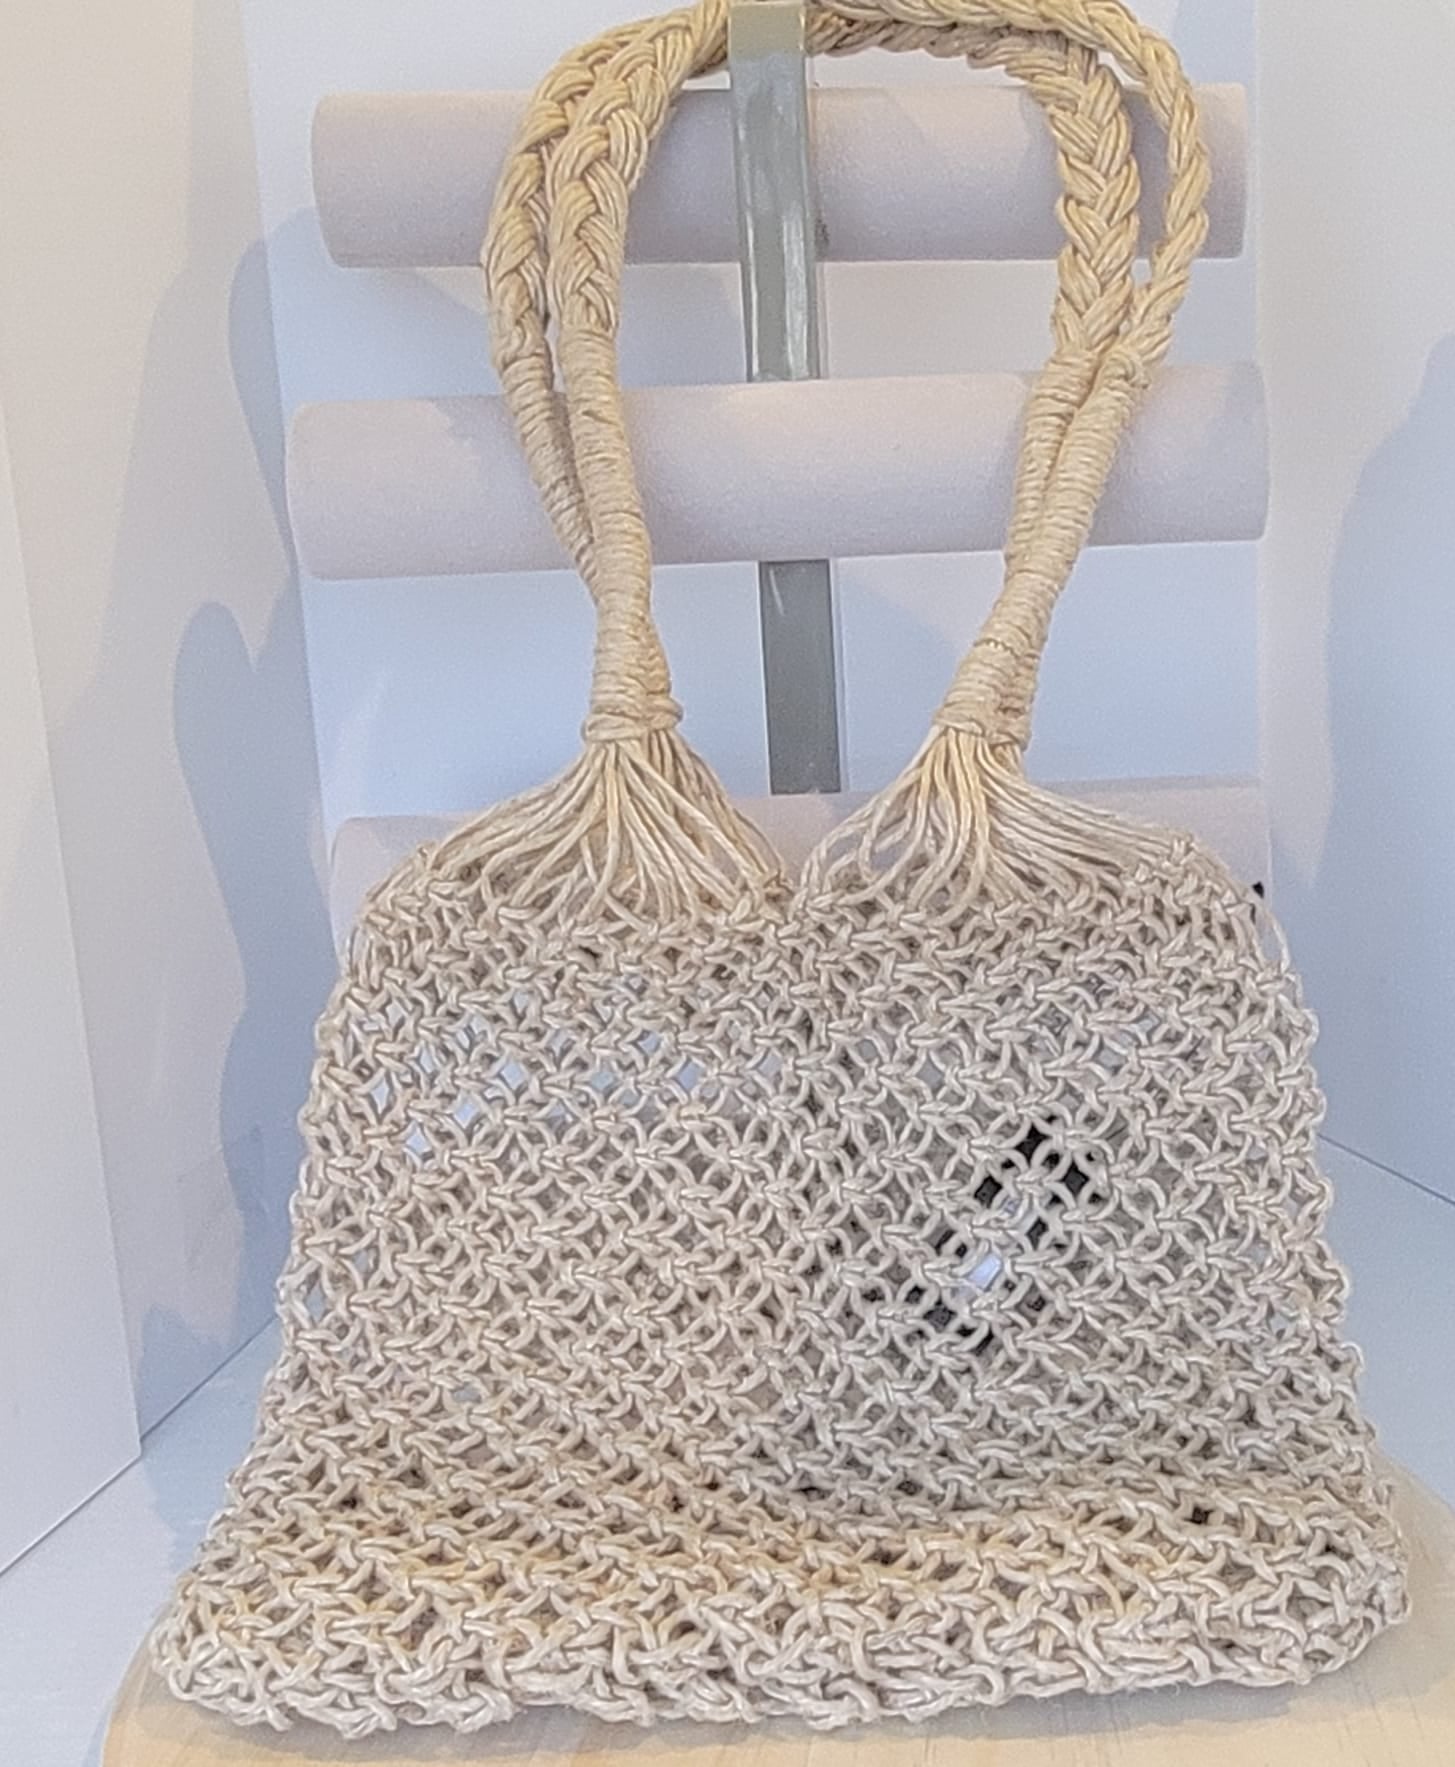 MYUS122 - Jute Crochet Bag